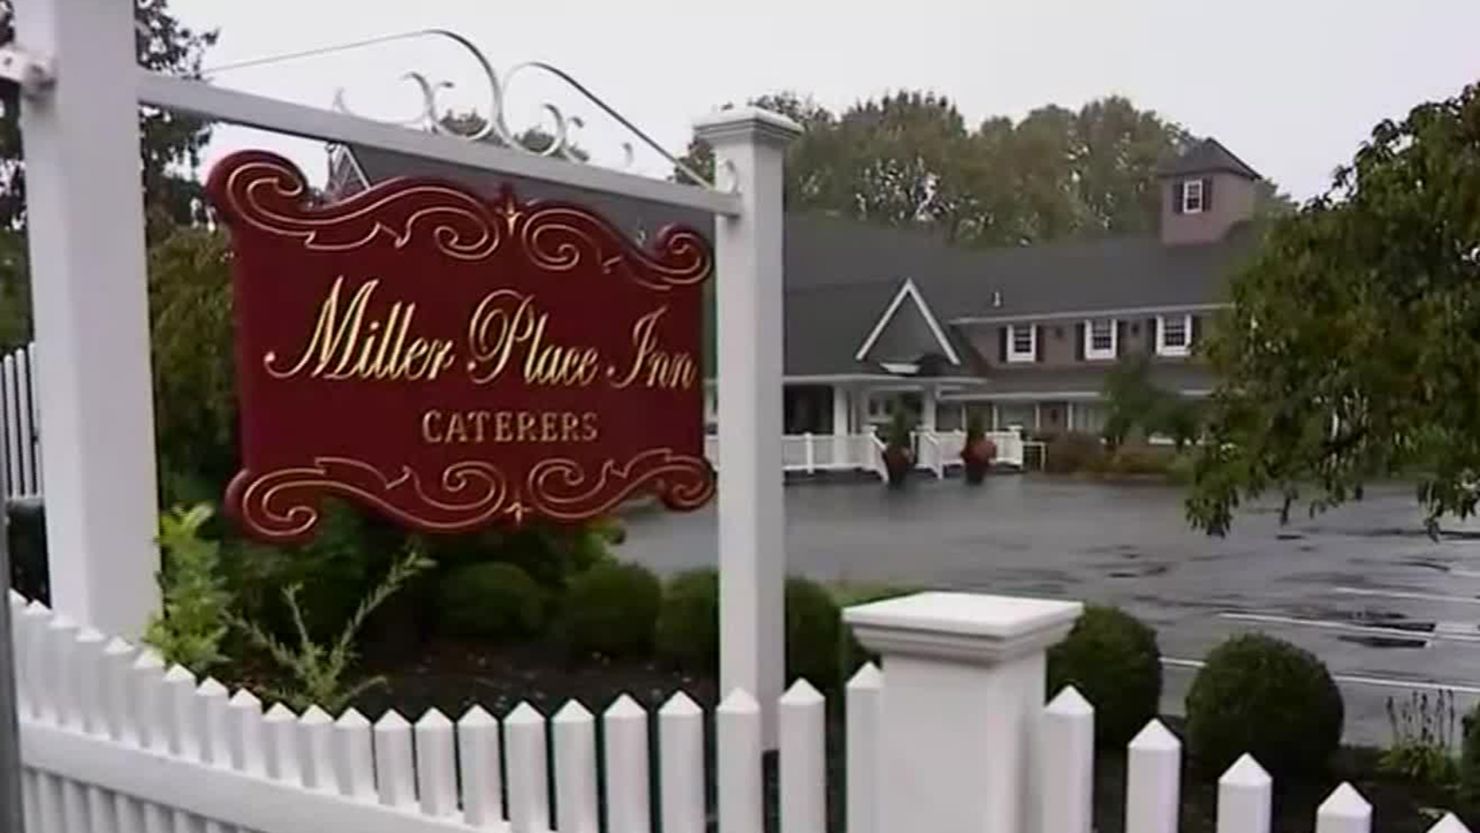 Miller Place Inn on New York's Long Island hosted the Sweet 16 event on September 25.